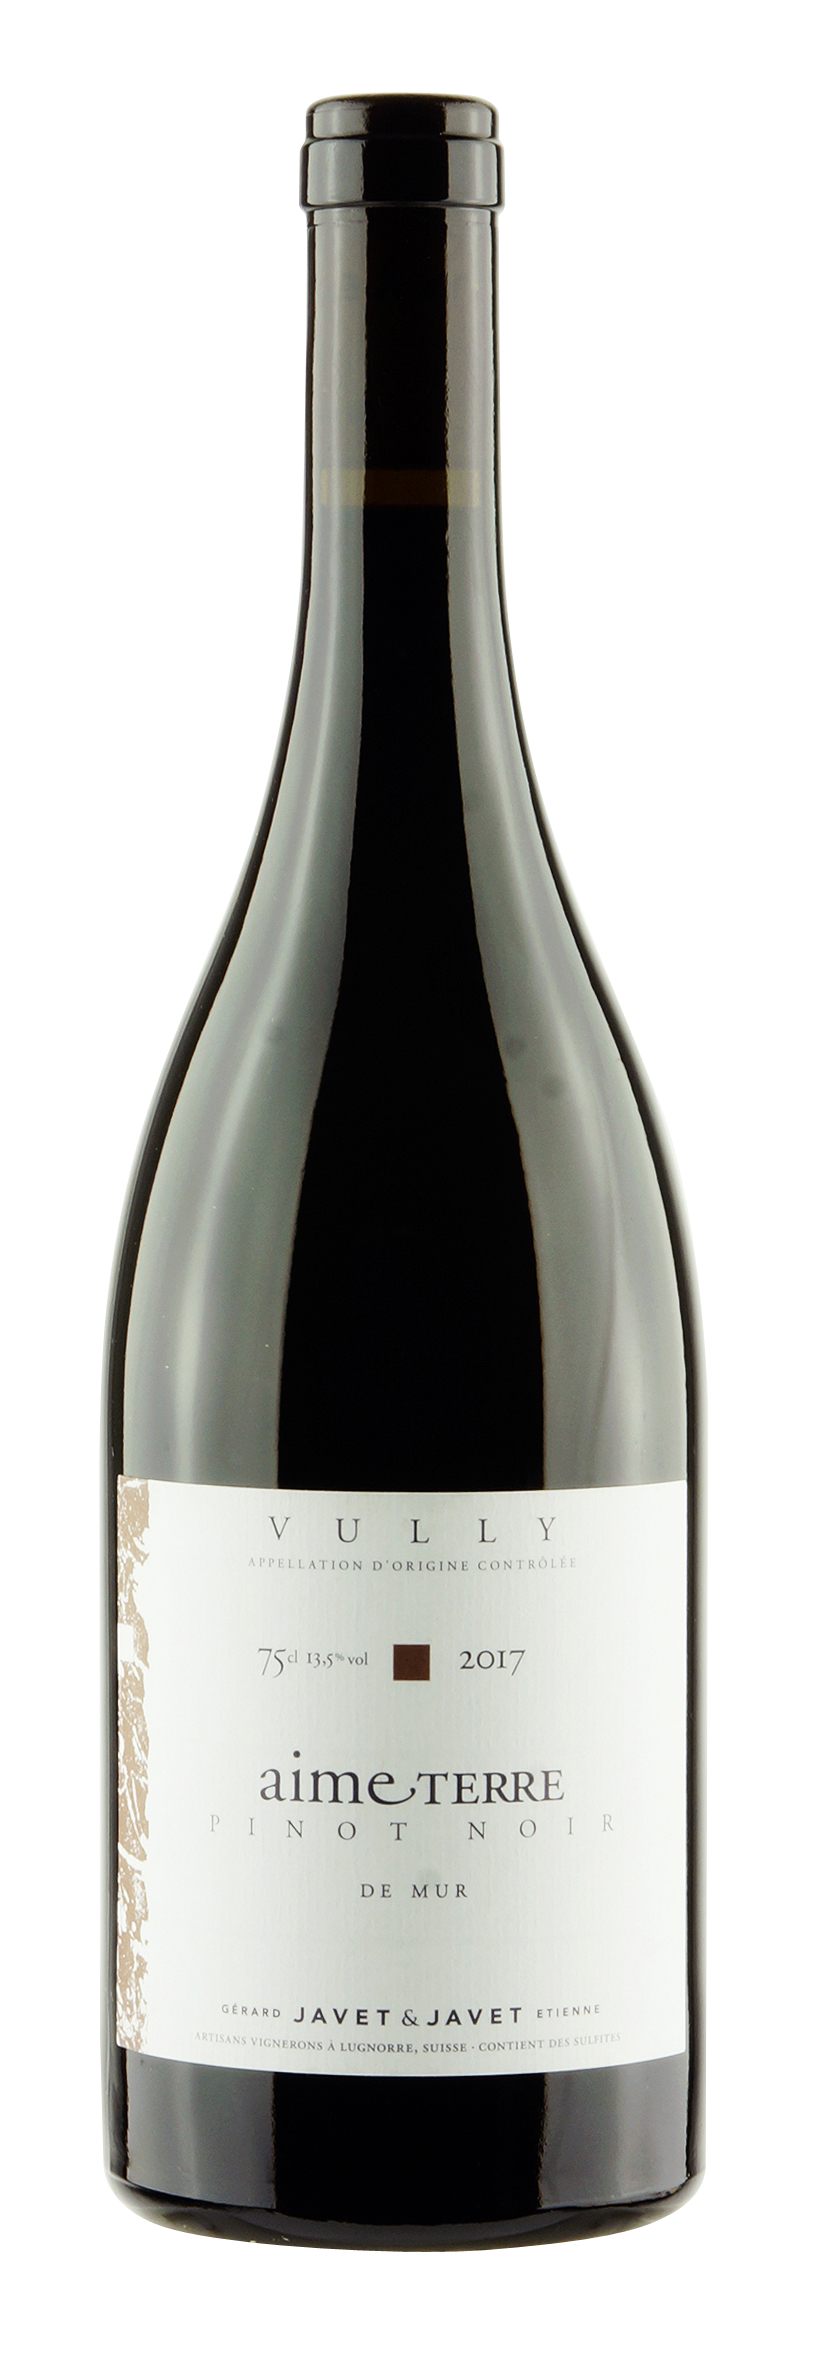 Vully AOC - Fribourg Pinot Noir Aime Terre de Mur 2017